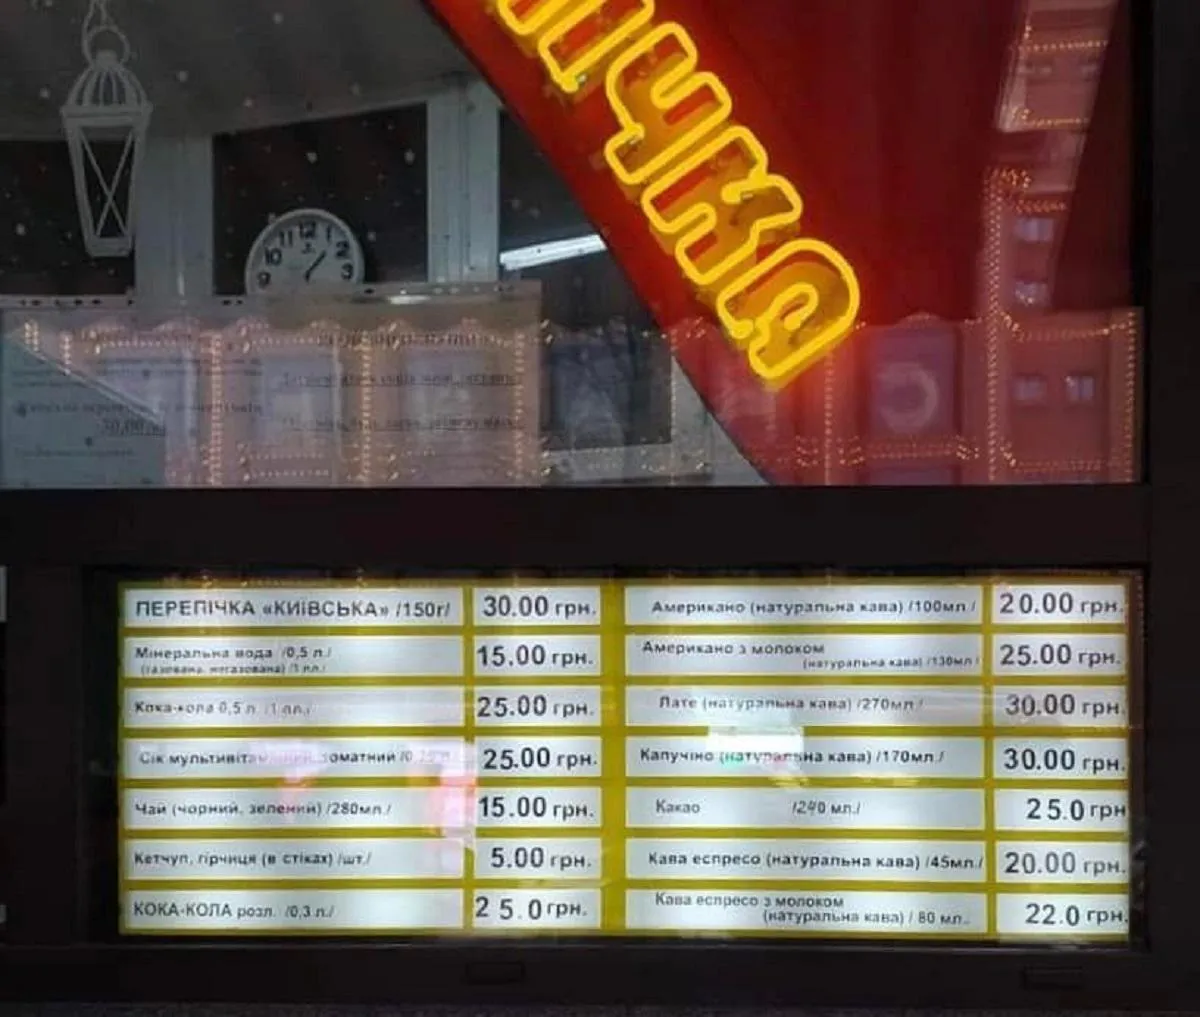 Київська перепічка подорожчала до 30 гривень, вона майже наздогнала вартість гамбургеру з McDonald's